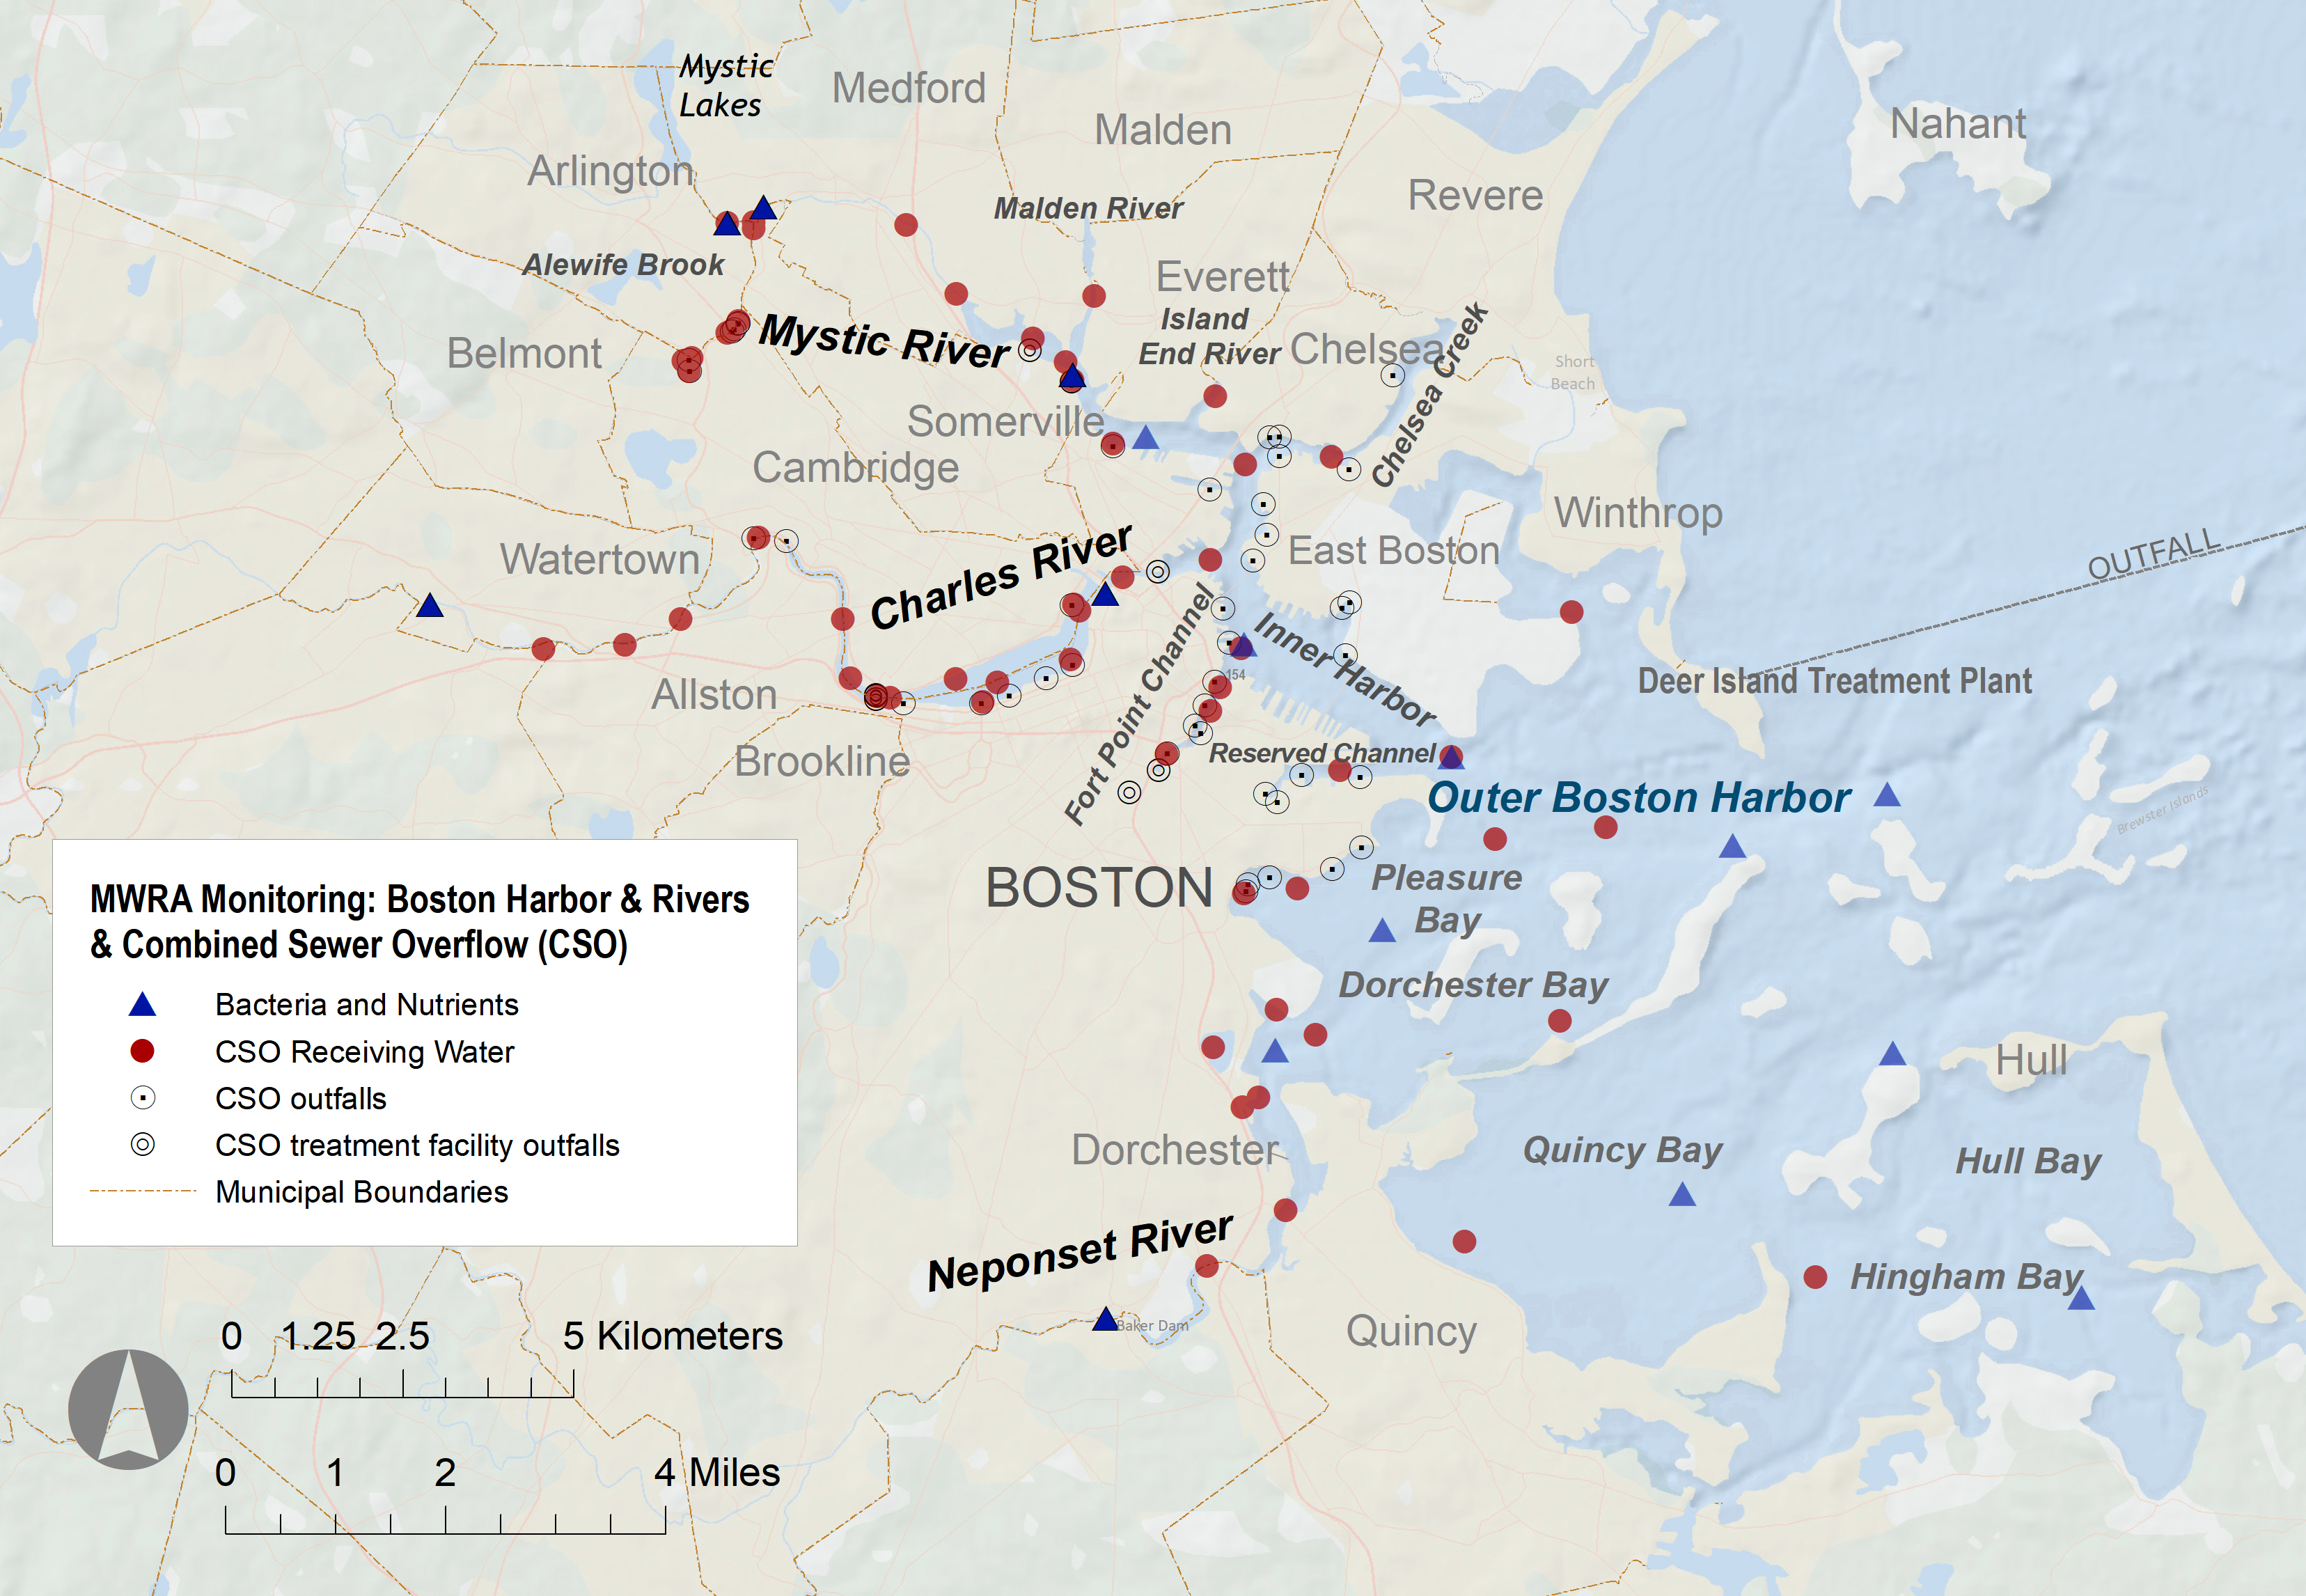 Harbor sampling locations